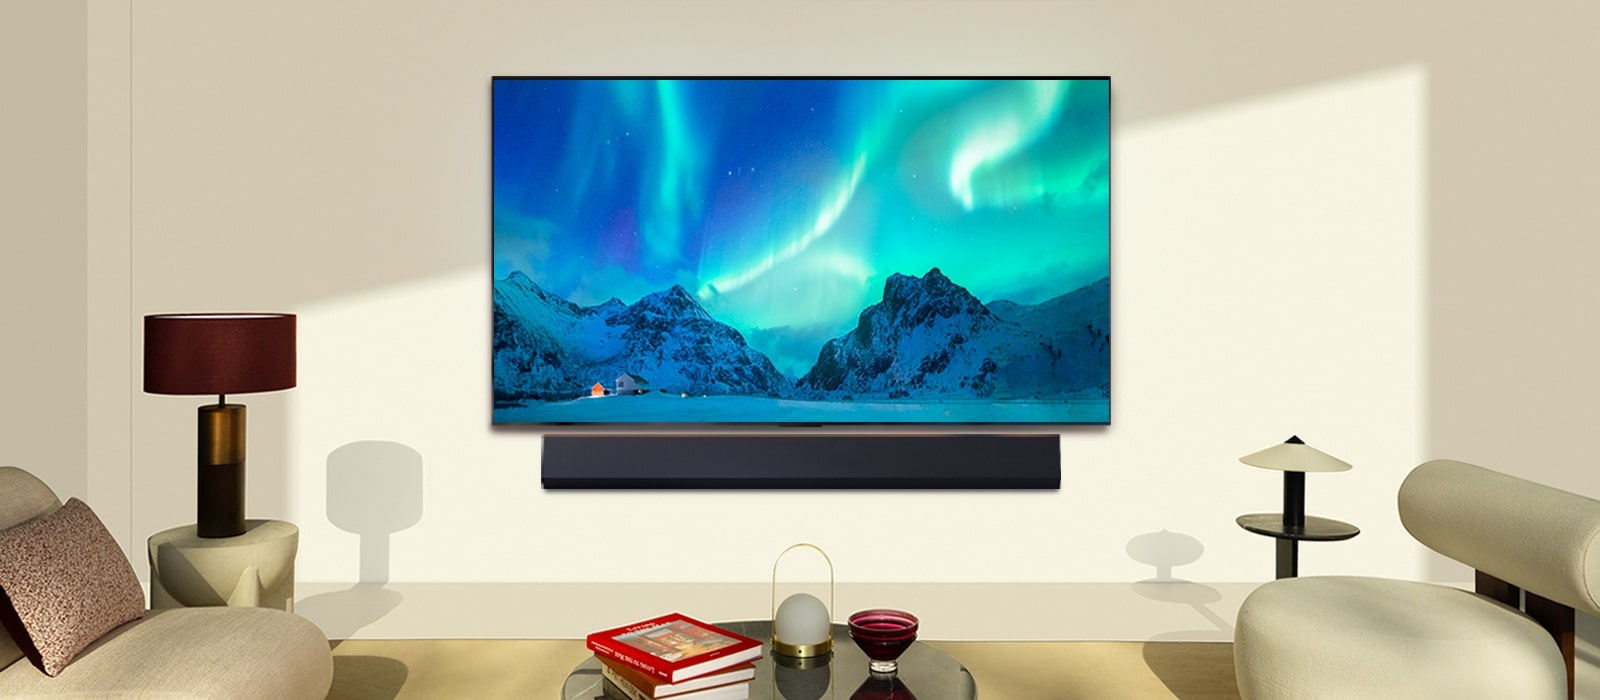 LG OLED TV ir LG garso juosta modernioje gyvenamojoje patalpoje dienos metu. Poliarinės pašvaistės vaizdas ekrane rodomas idealiu ryškumo lygiu.